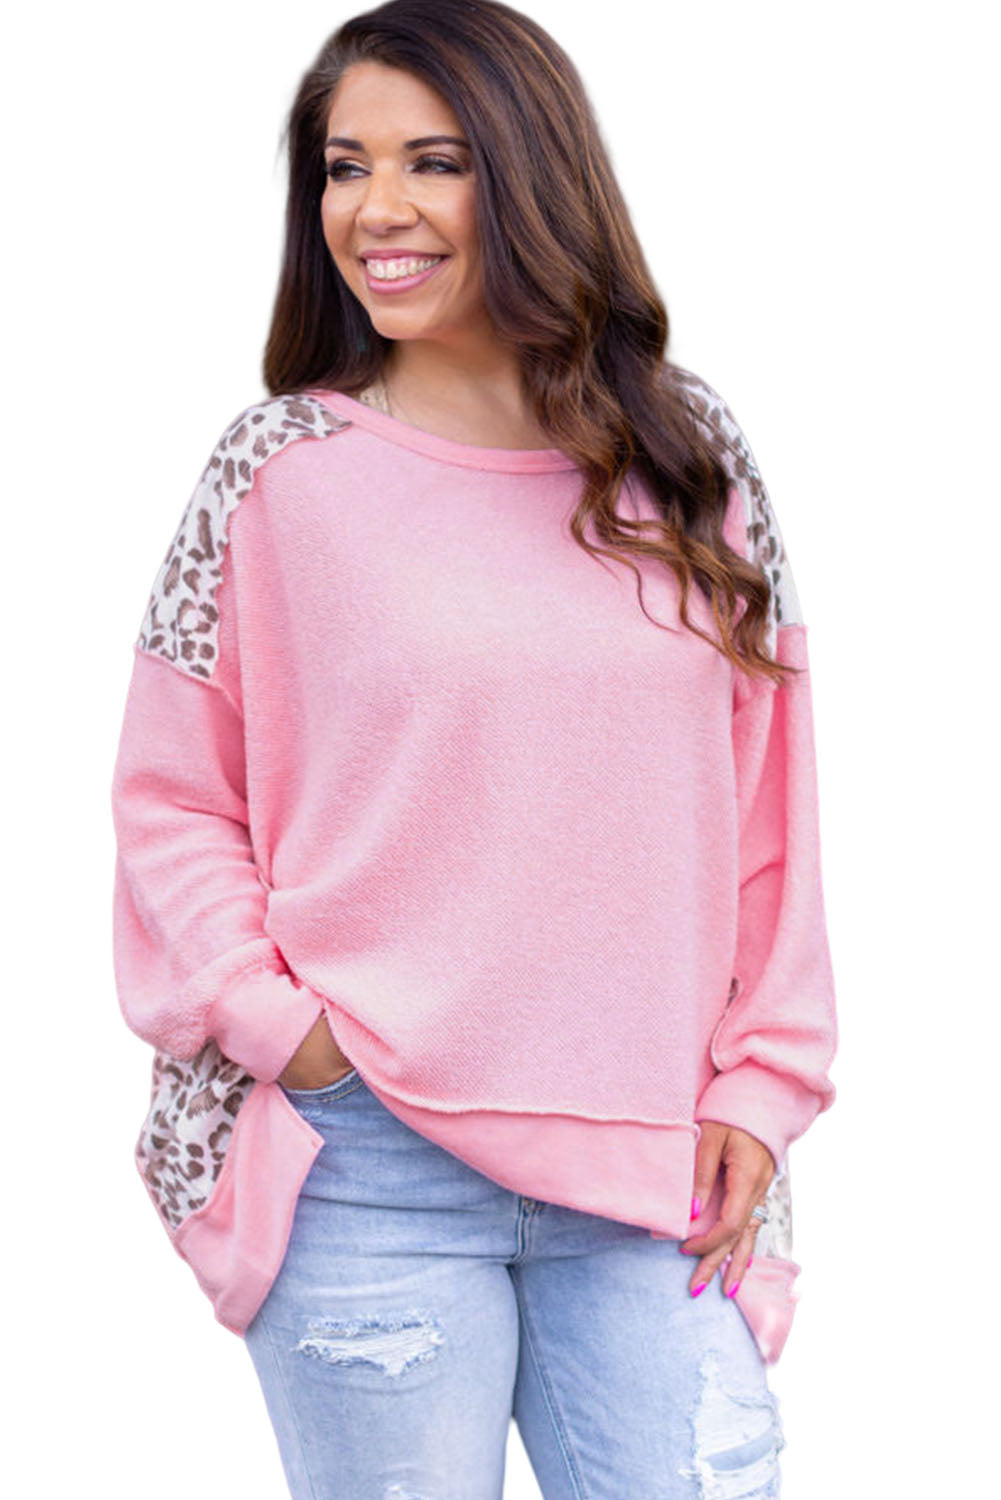 Rosafarbenes Plus-Size-Sweatshirt mit freiliegender Naht und Leopardenmuster